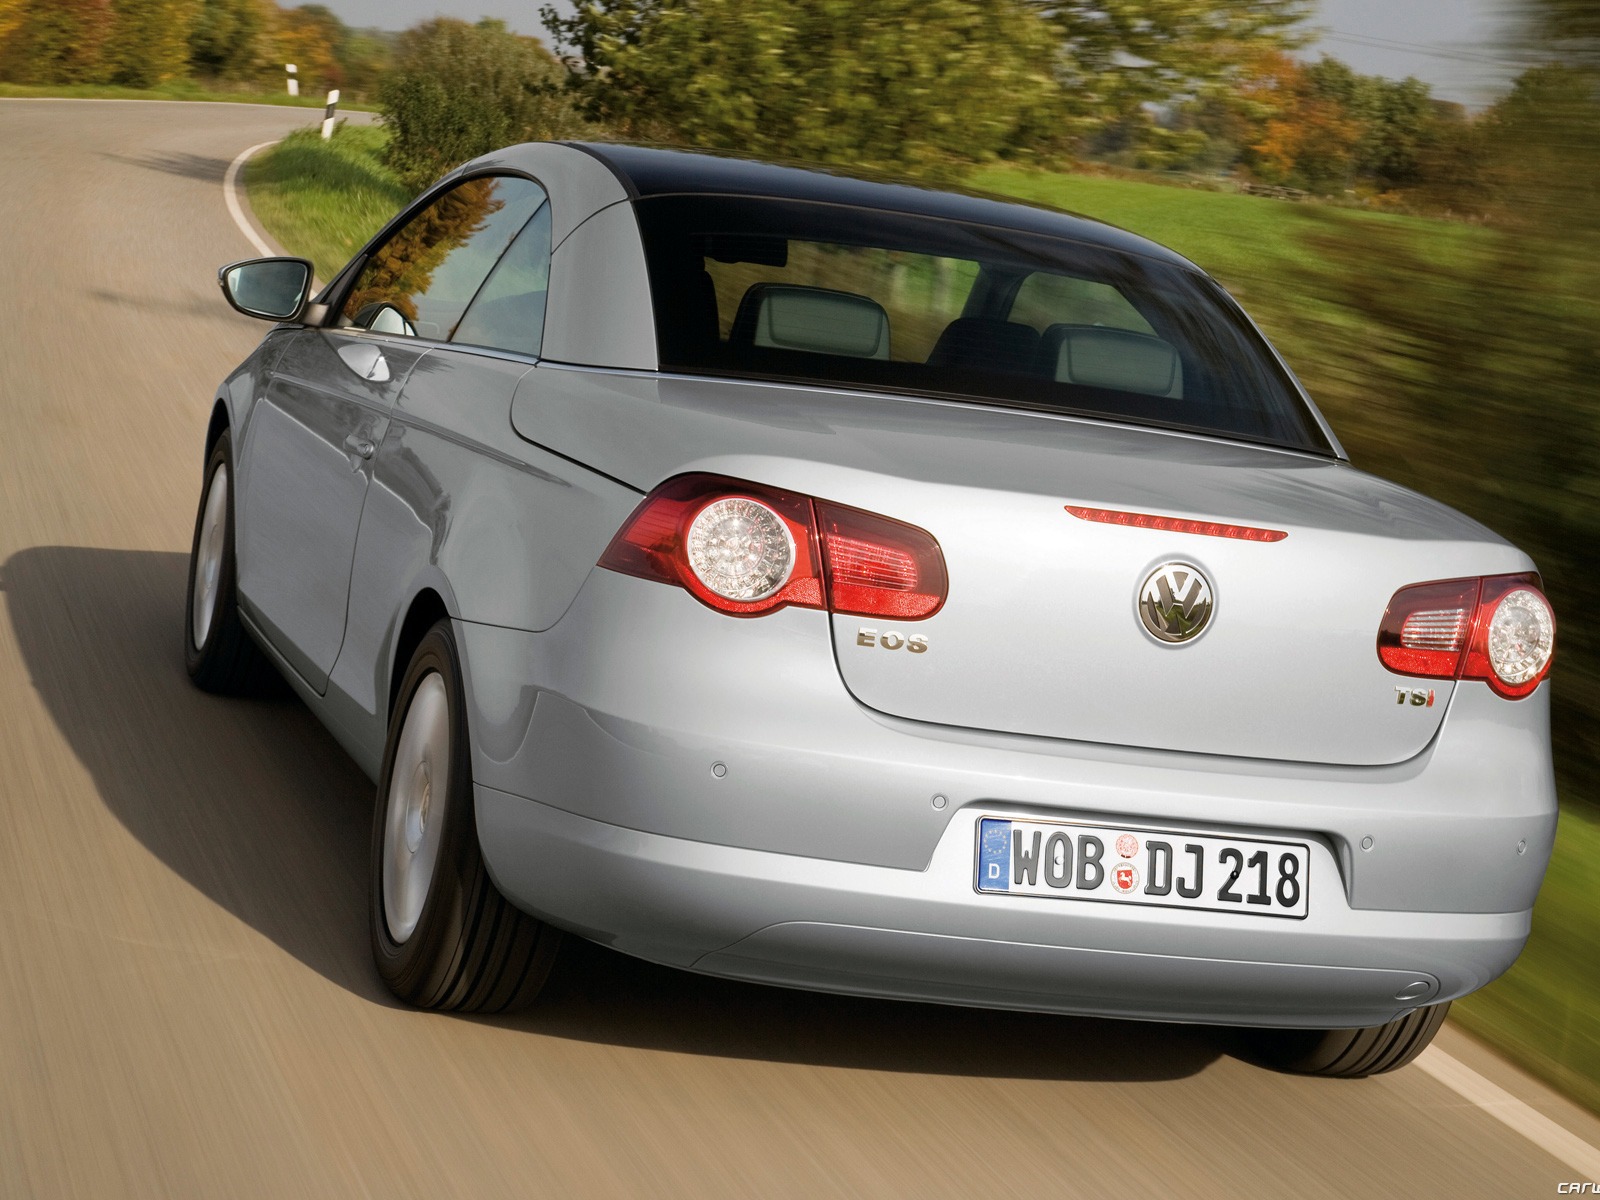 Volkswagen Eos - 2010 大众16 - 1600x1200